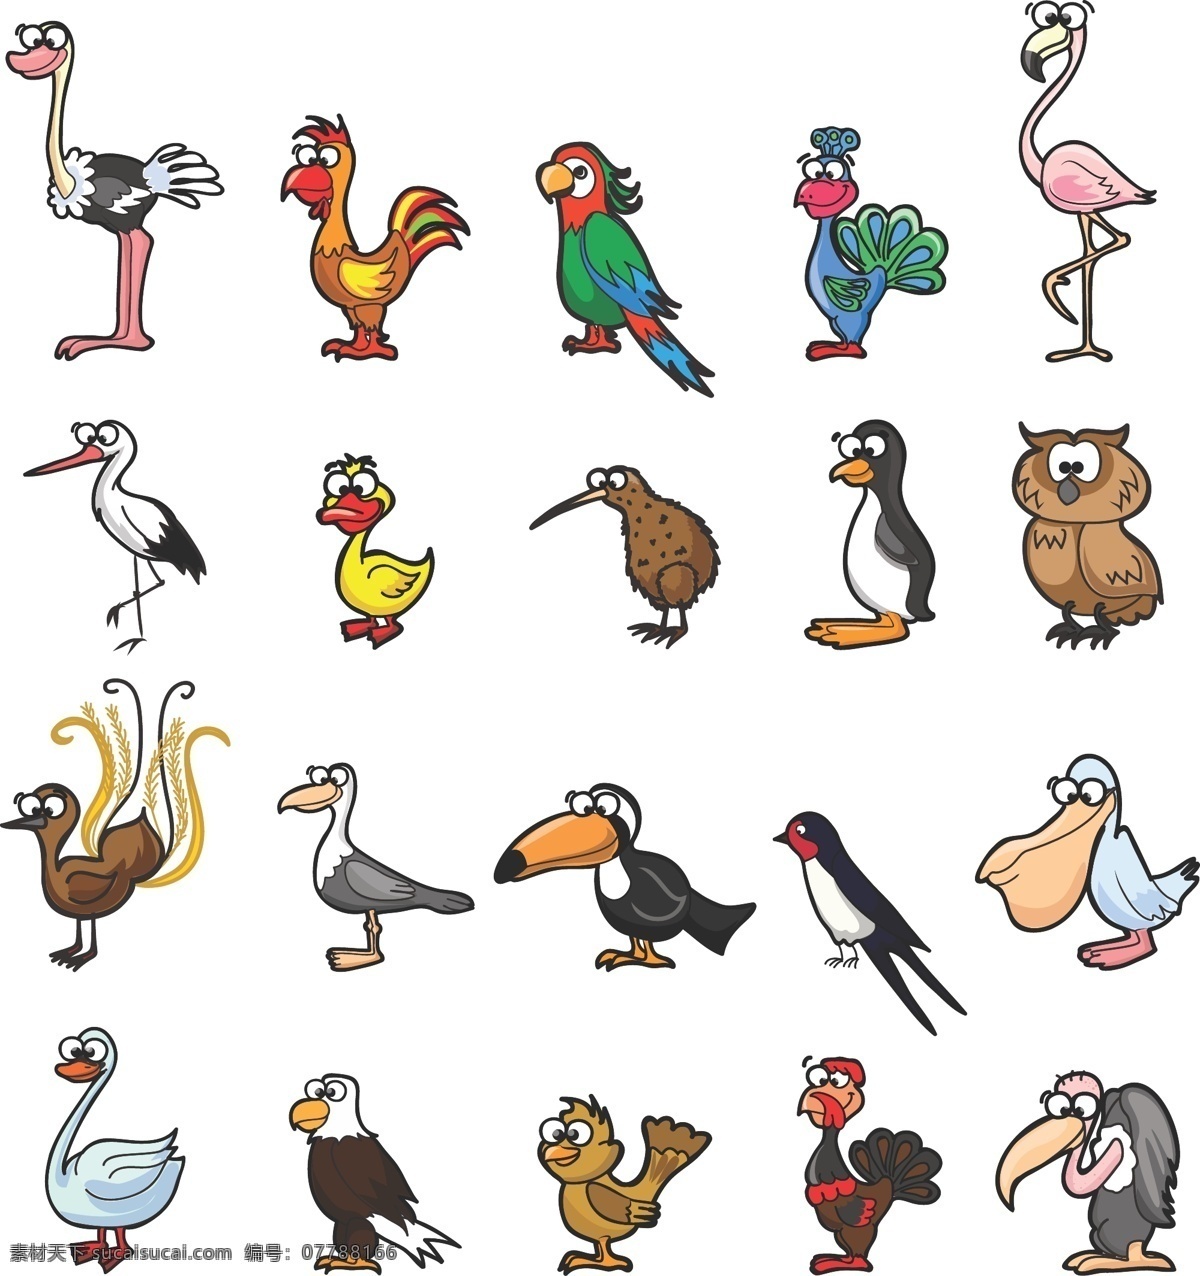 手绘 卡通 版 各种 鸟类 丹顶鹤 猫头鹰 平面素材 设计素材 矢量素材 鸵鸟 燕子